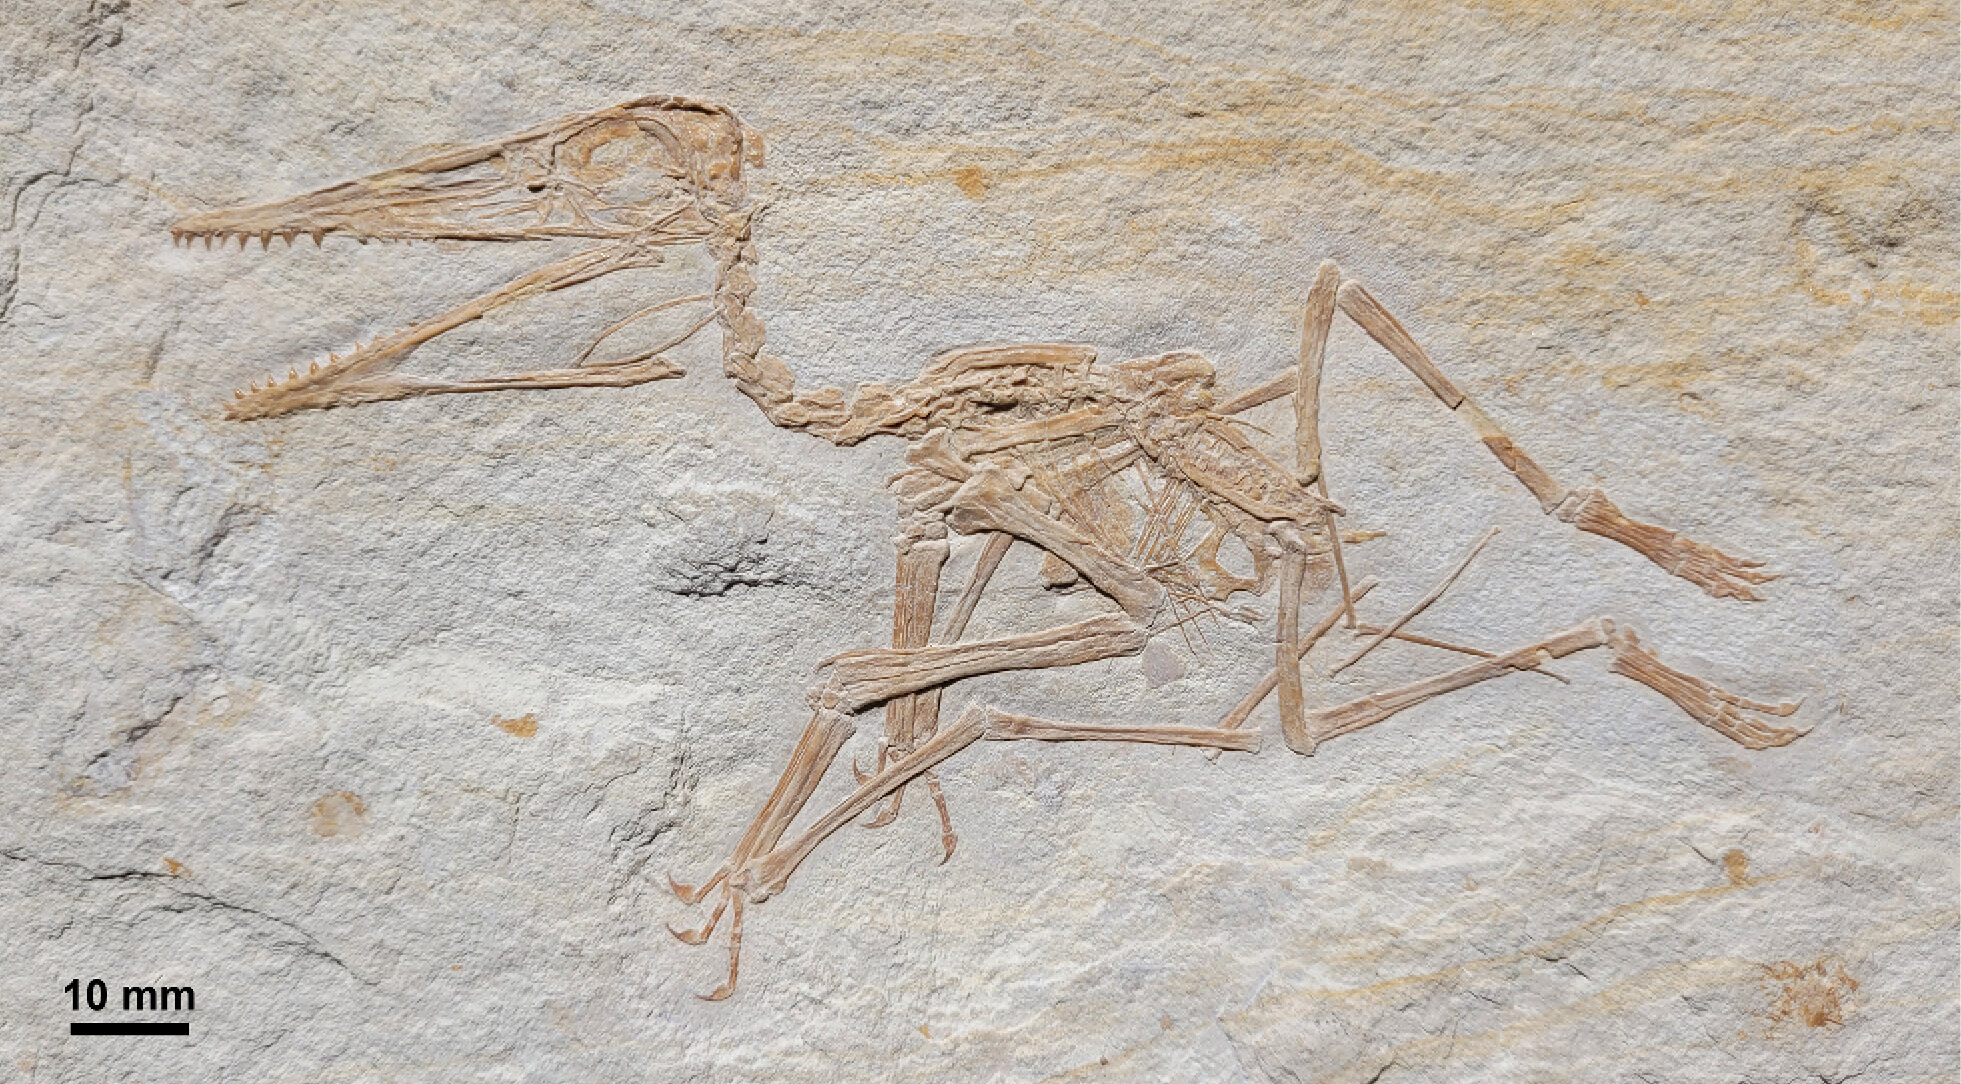 Mundo Pré-Histórico: Pterodáctilo, o primeiro pterossauro